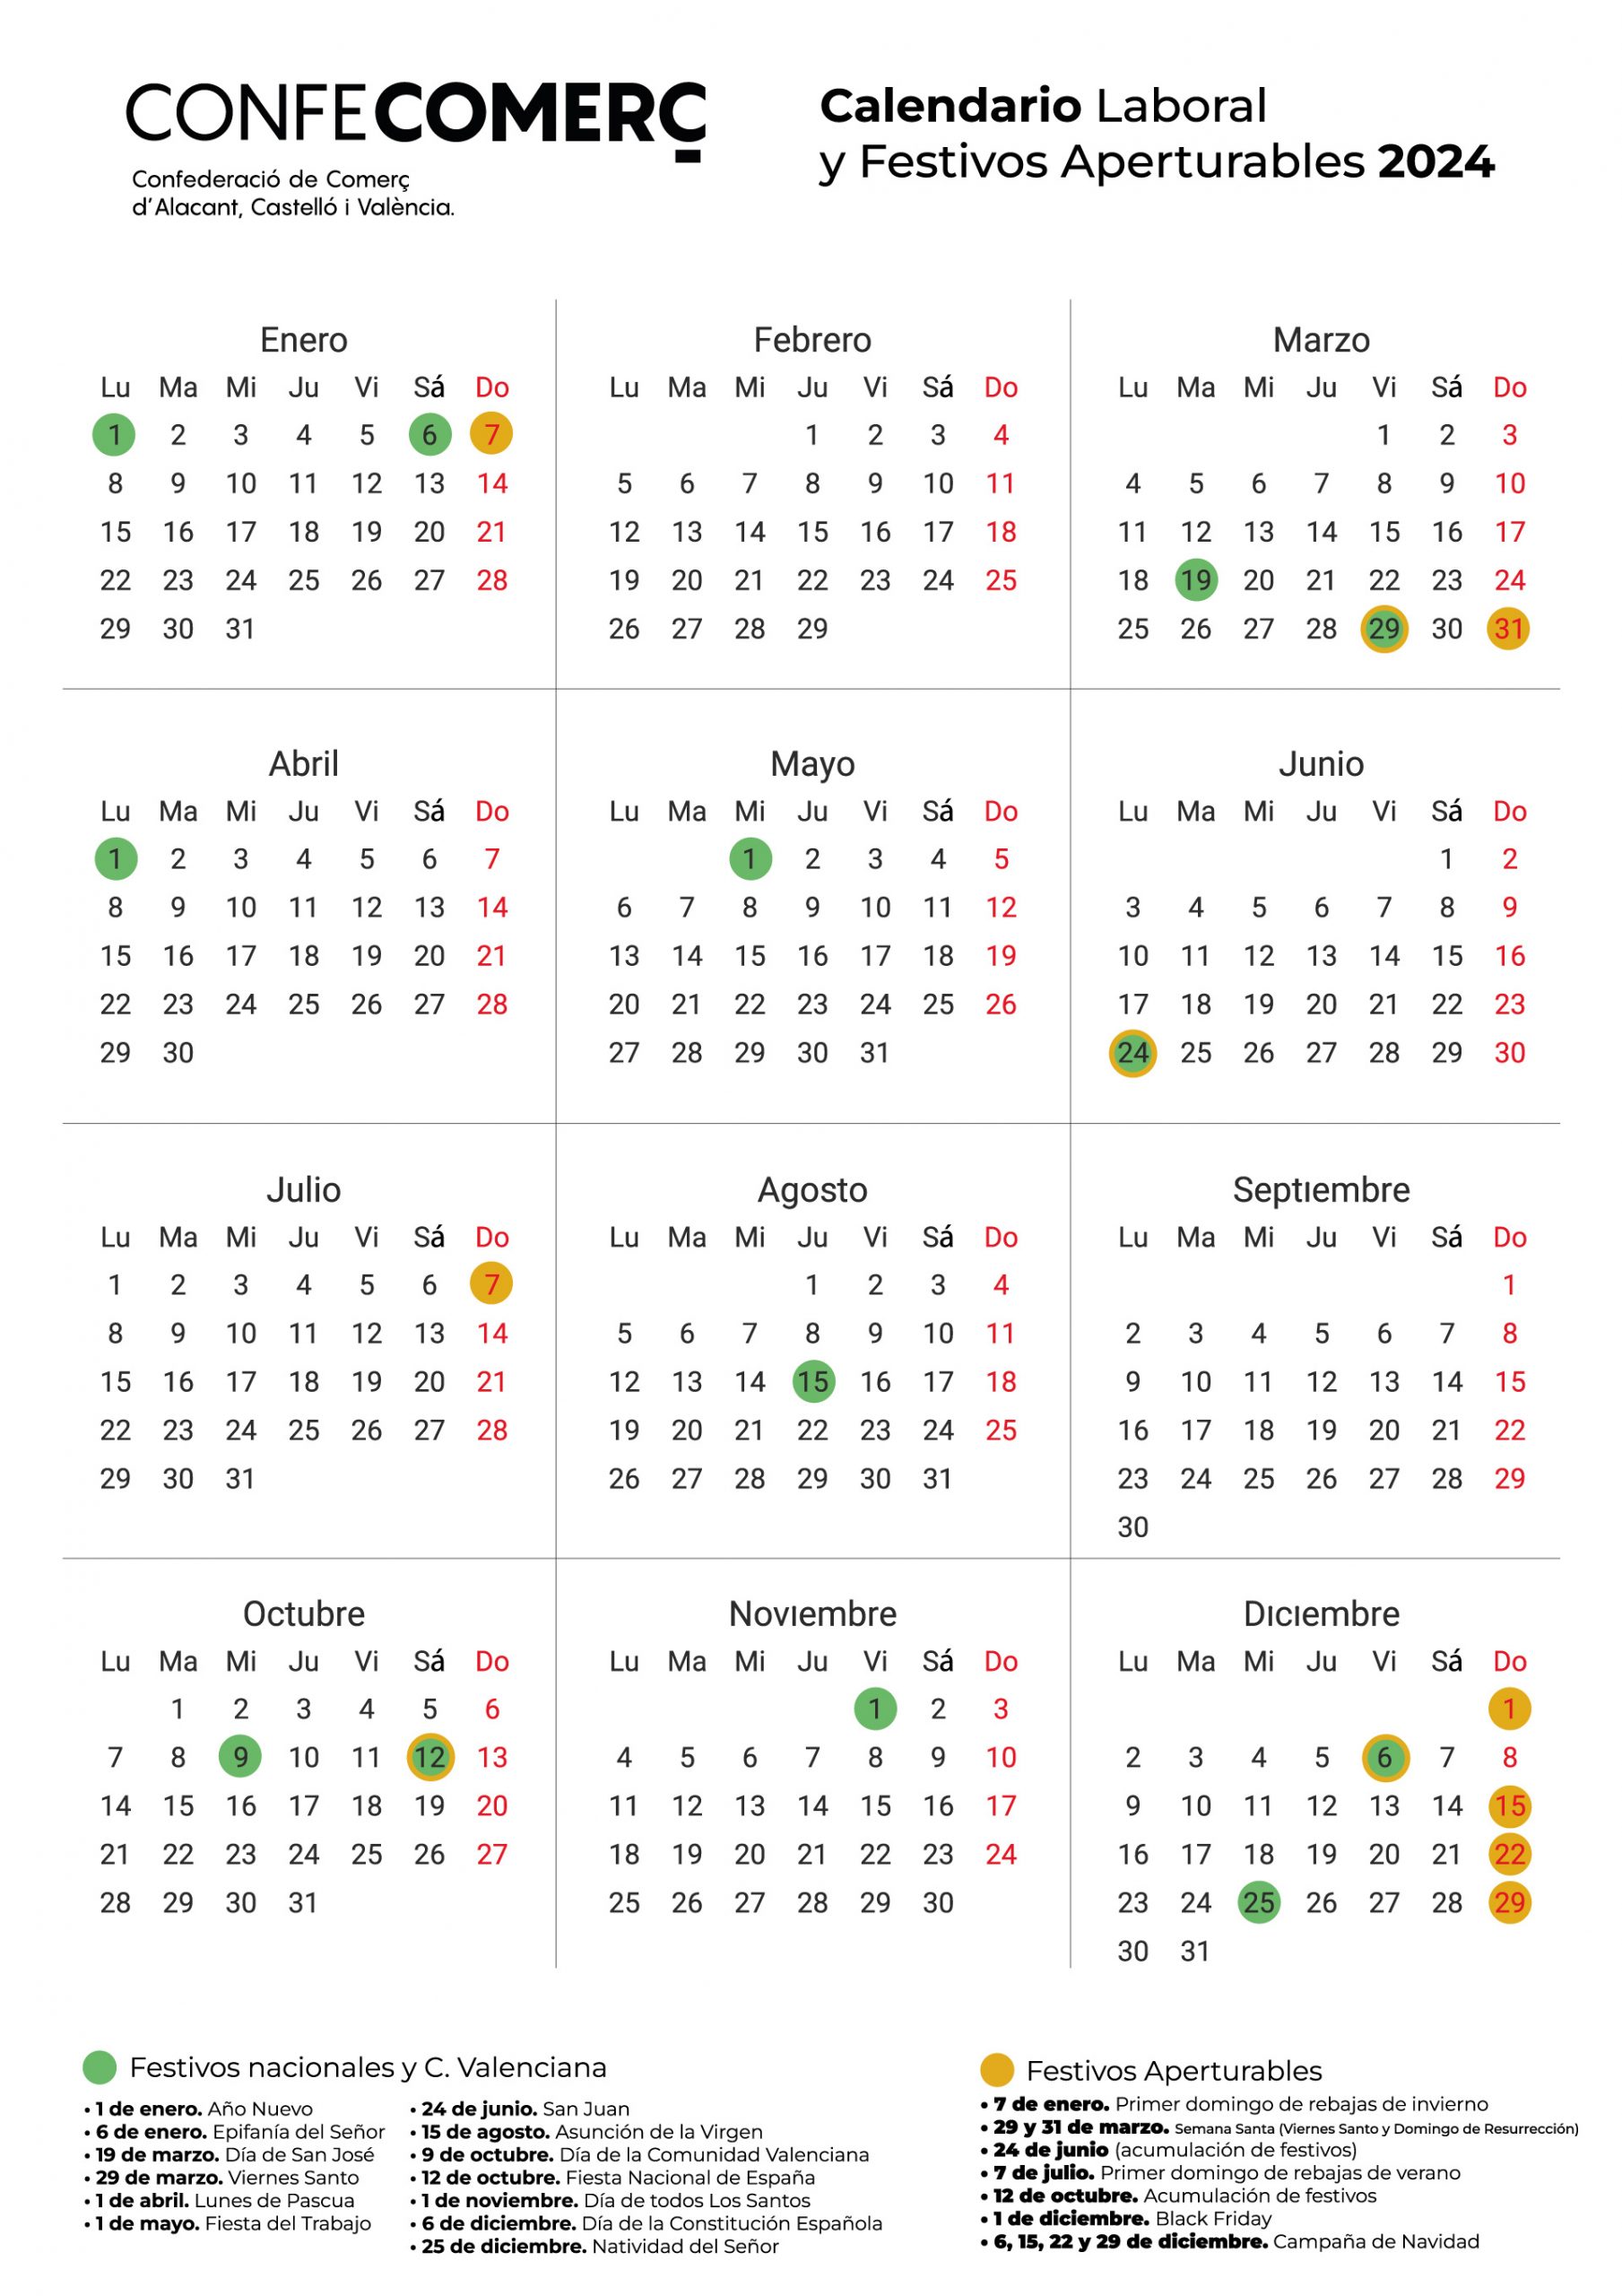 Calendario-Laboral-y-festivos-aperturables-2024---CONFECOMERÇ